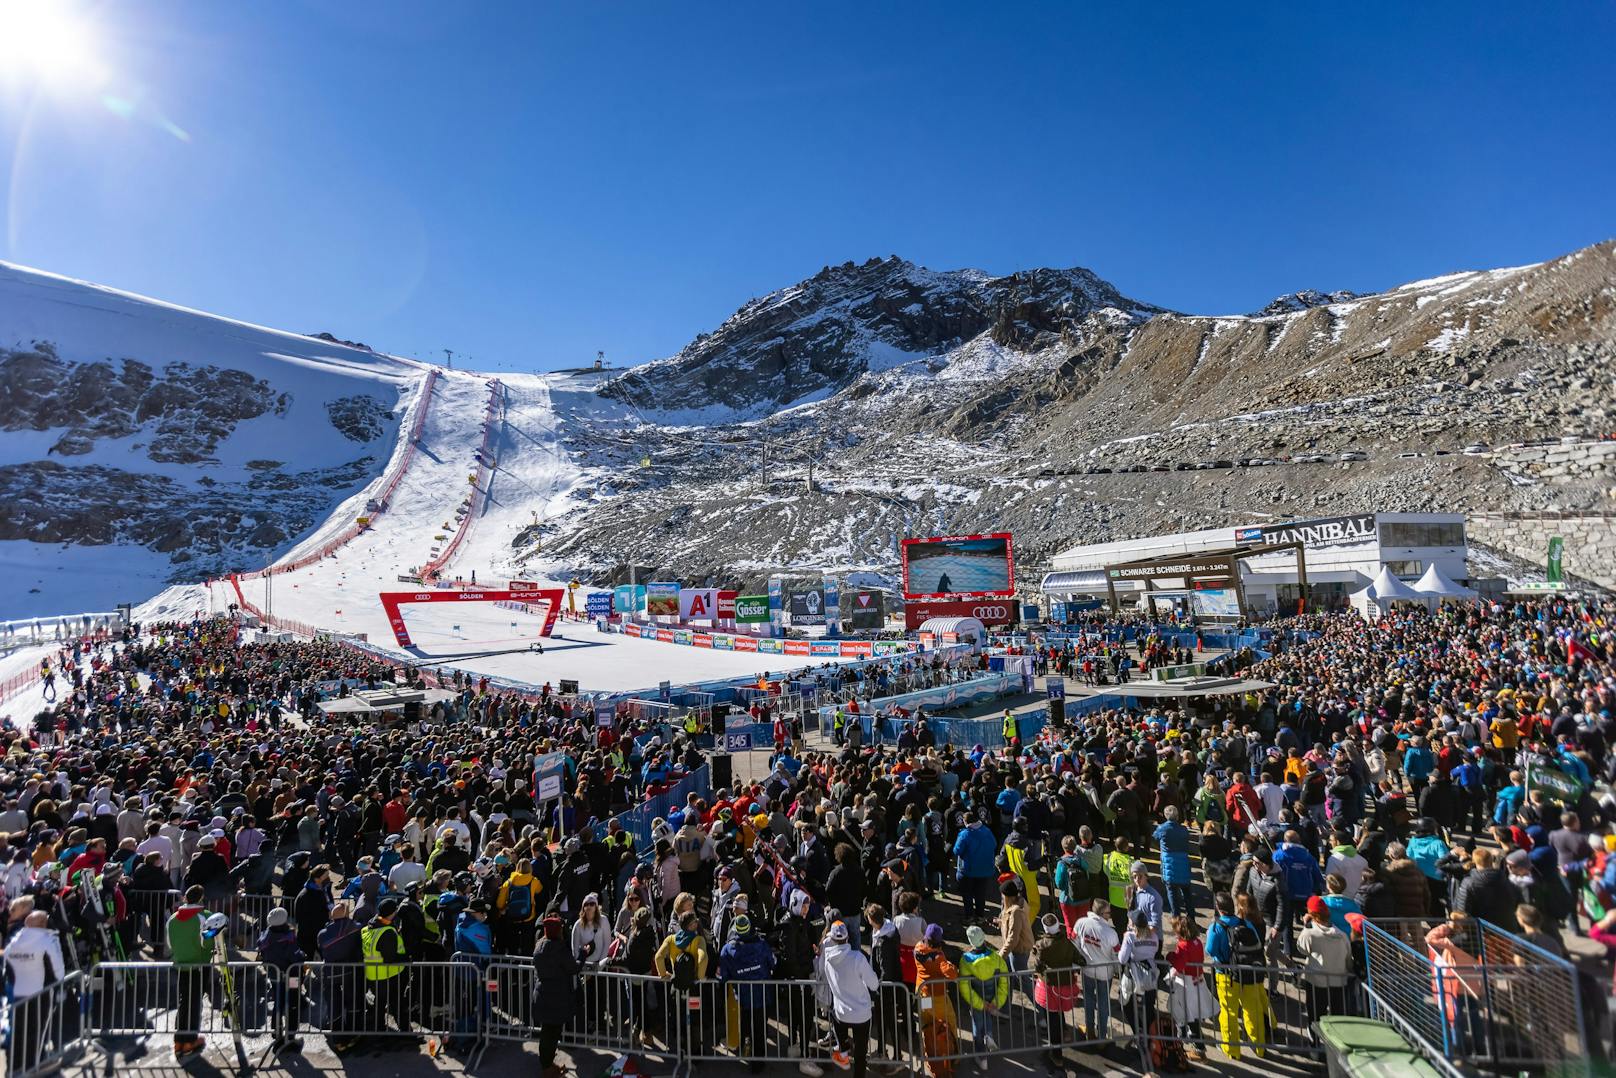  Die Finanzpolizei im Amt für Betrugsbekämpfung kontrollierte im Rahmen des Skiweltcup-Openings in Sölden am 24. Oktober mehrere Sicherheitsunternehmen, was aufgrund zahlreicher Verstöße Strafen in Höhe von 20.000 Euro nach sich zieht. Symbolbild.